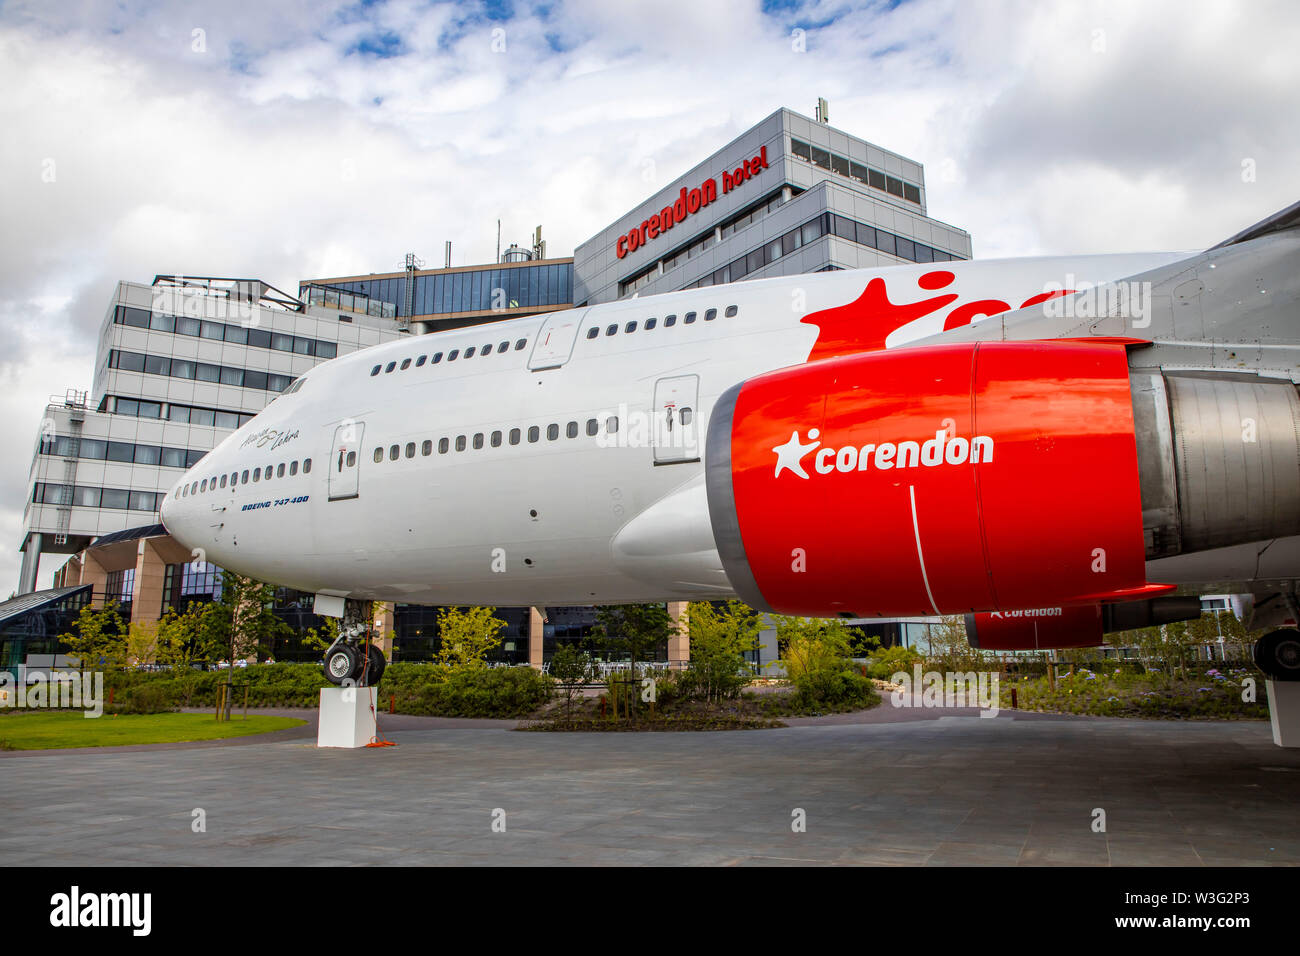 Corendon Village Hotels, am Flughafen Amsterdam Schiphol, ehemalige KLM Boeing 747-400, Jumbo Jet, im Park der Hotelanlage, wird zu einem 5D Luftfahrt Stock Photo